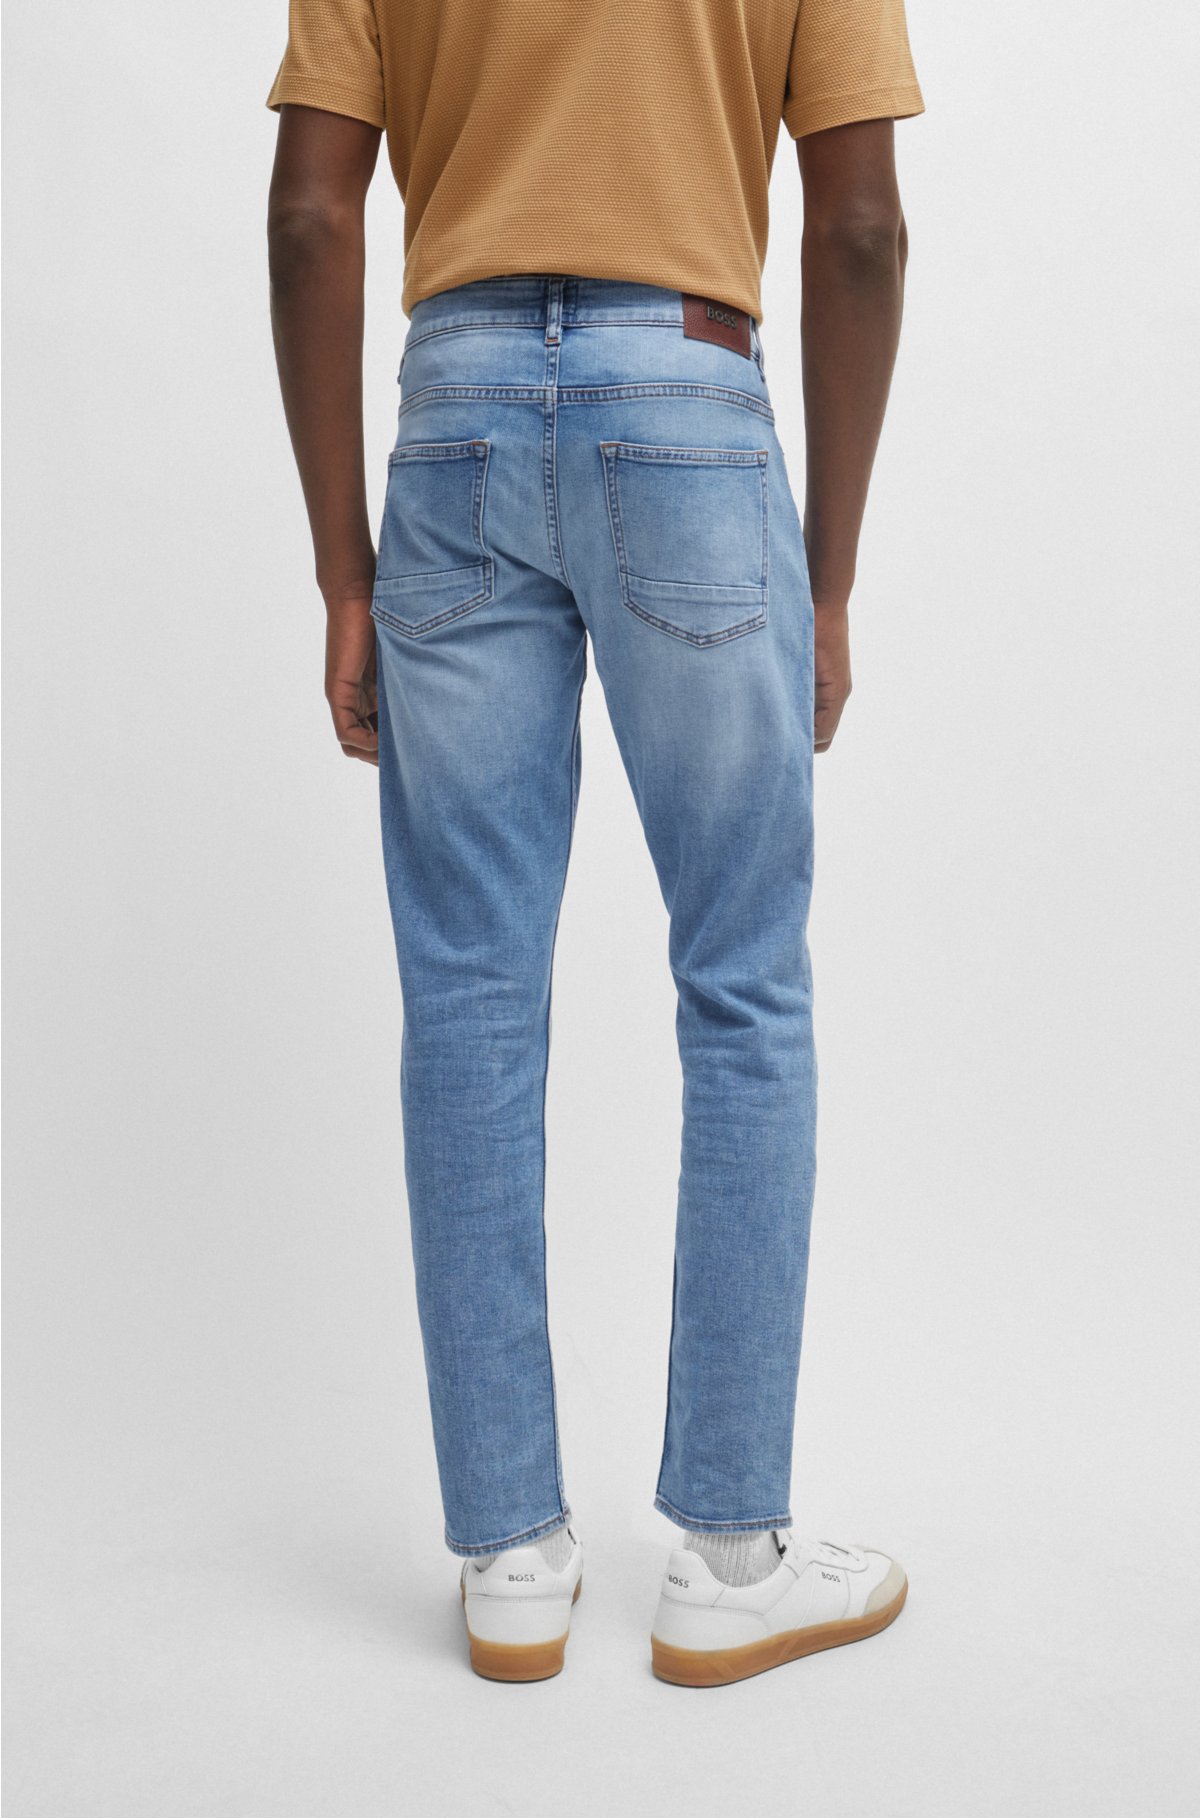 BOSS denim stretch jeans - Slim-fit super-soft in blue